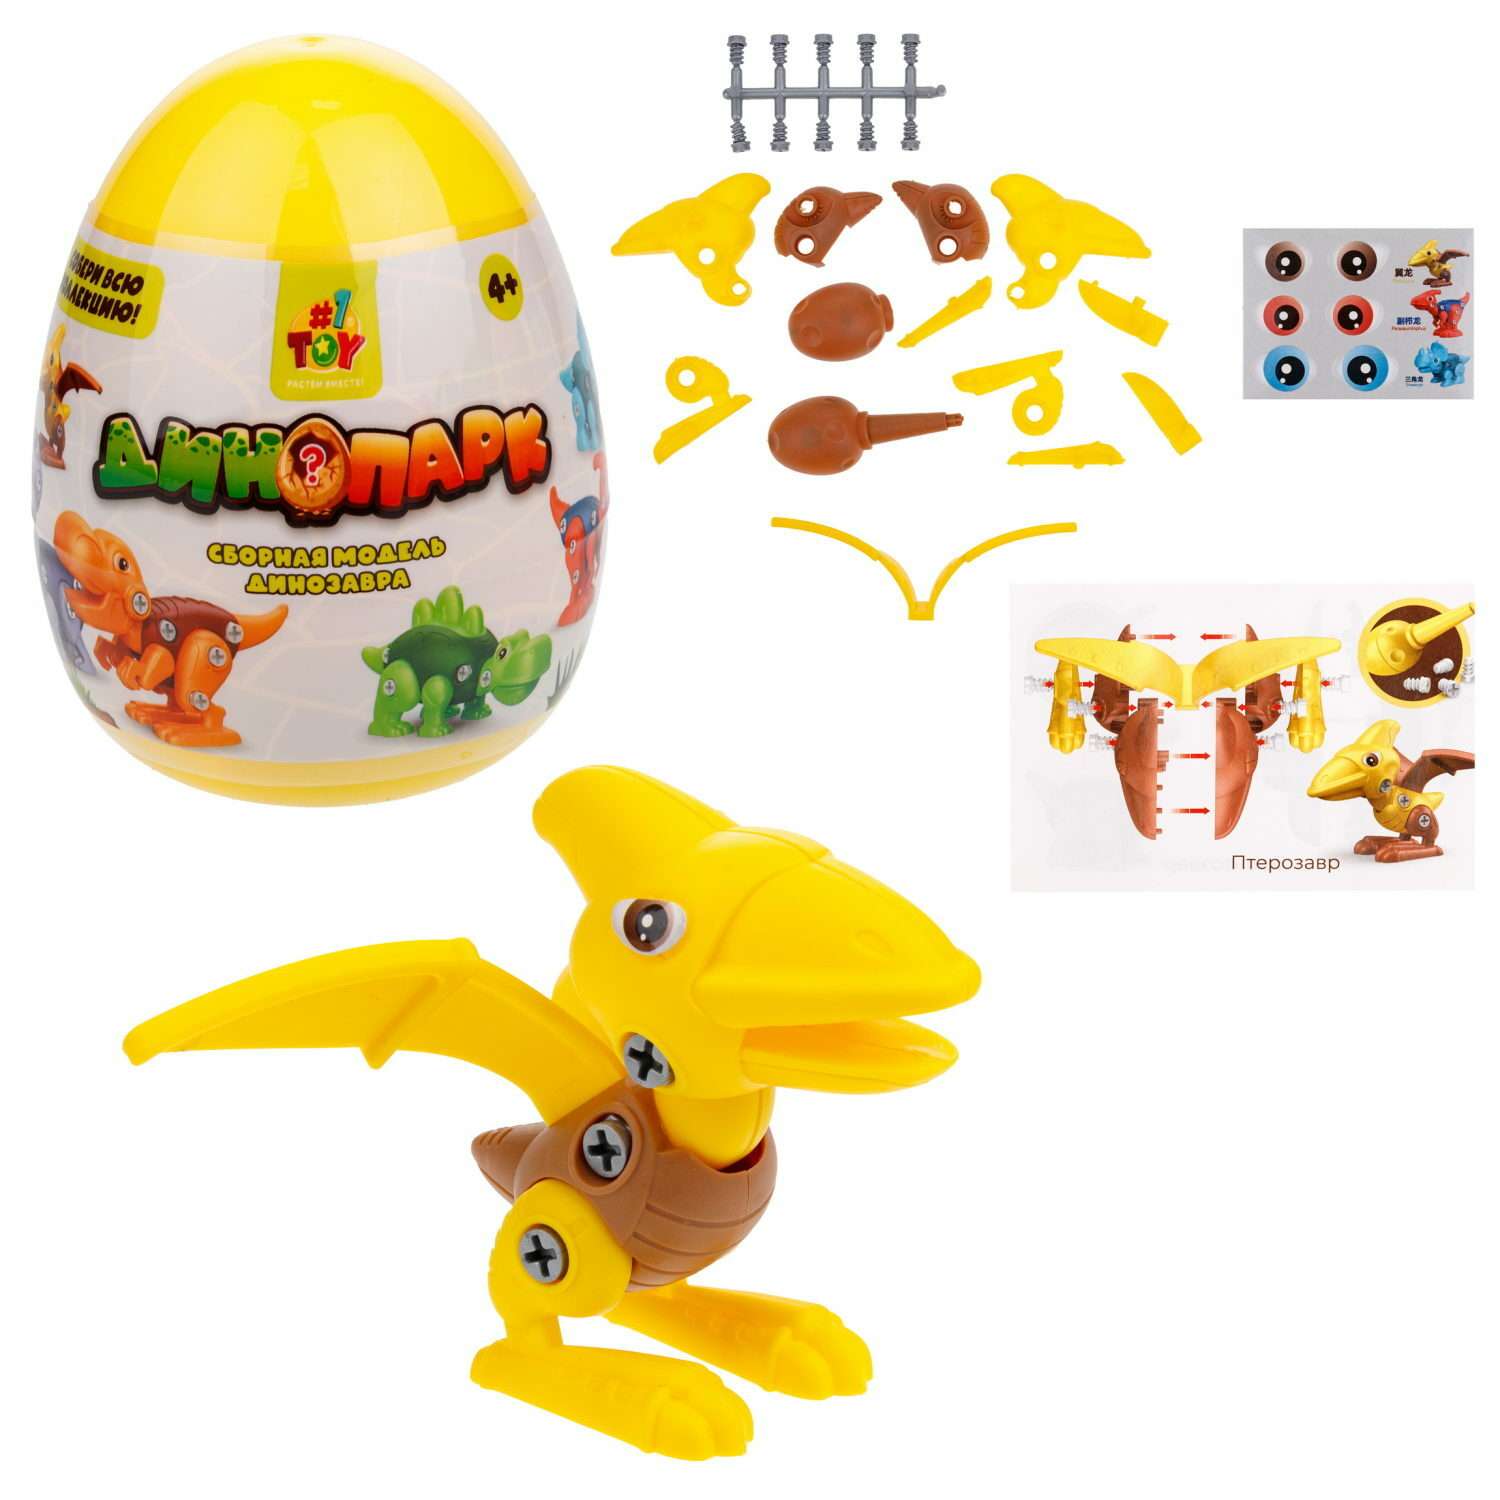 Игрушка-сюрприз 1TOY Динопарк Яйцо с динозавром желтый - фото 1